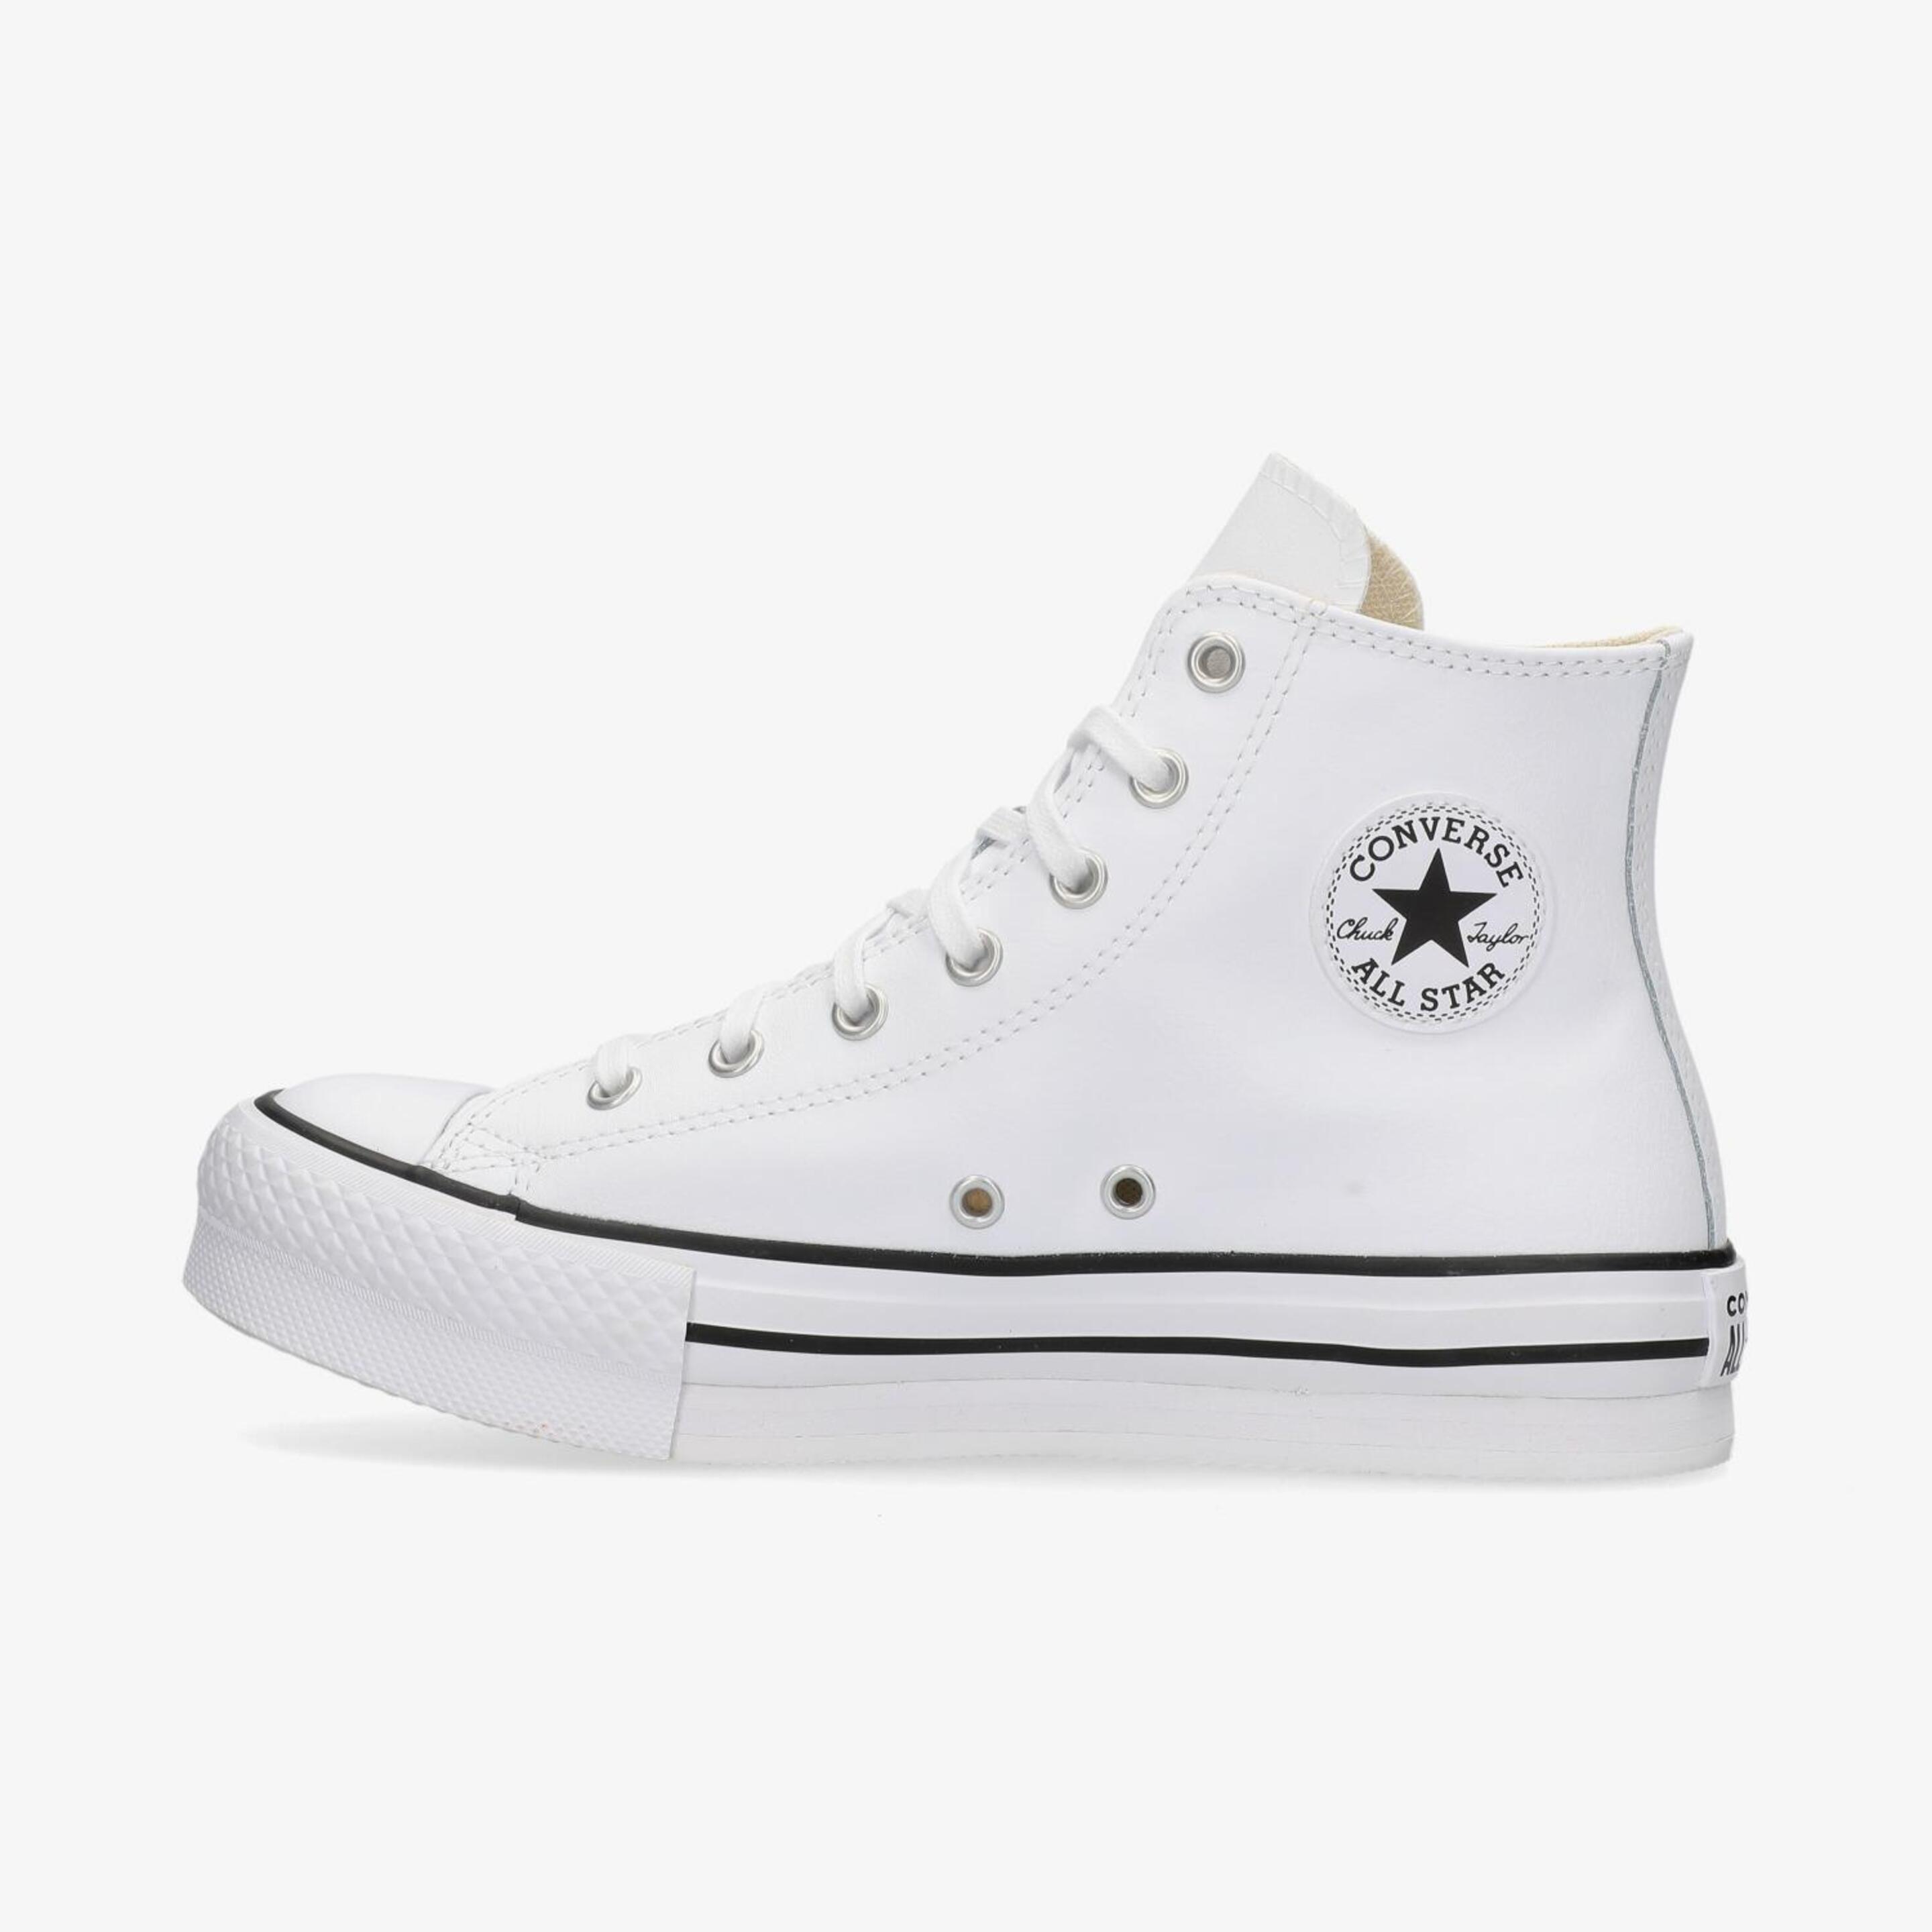 Converse Chuck Taylor All Star Leather - Blanco - Zapatillas Niña